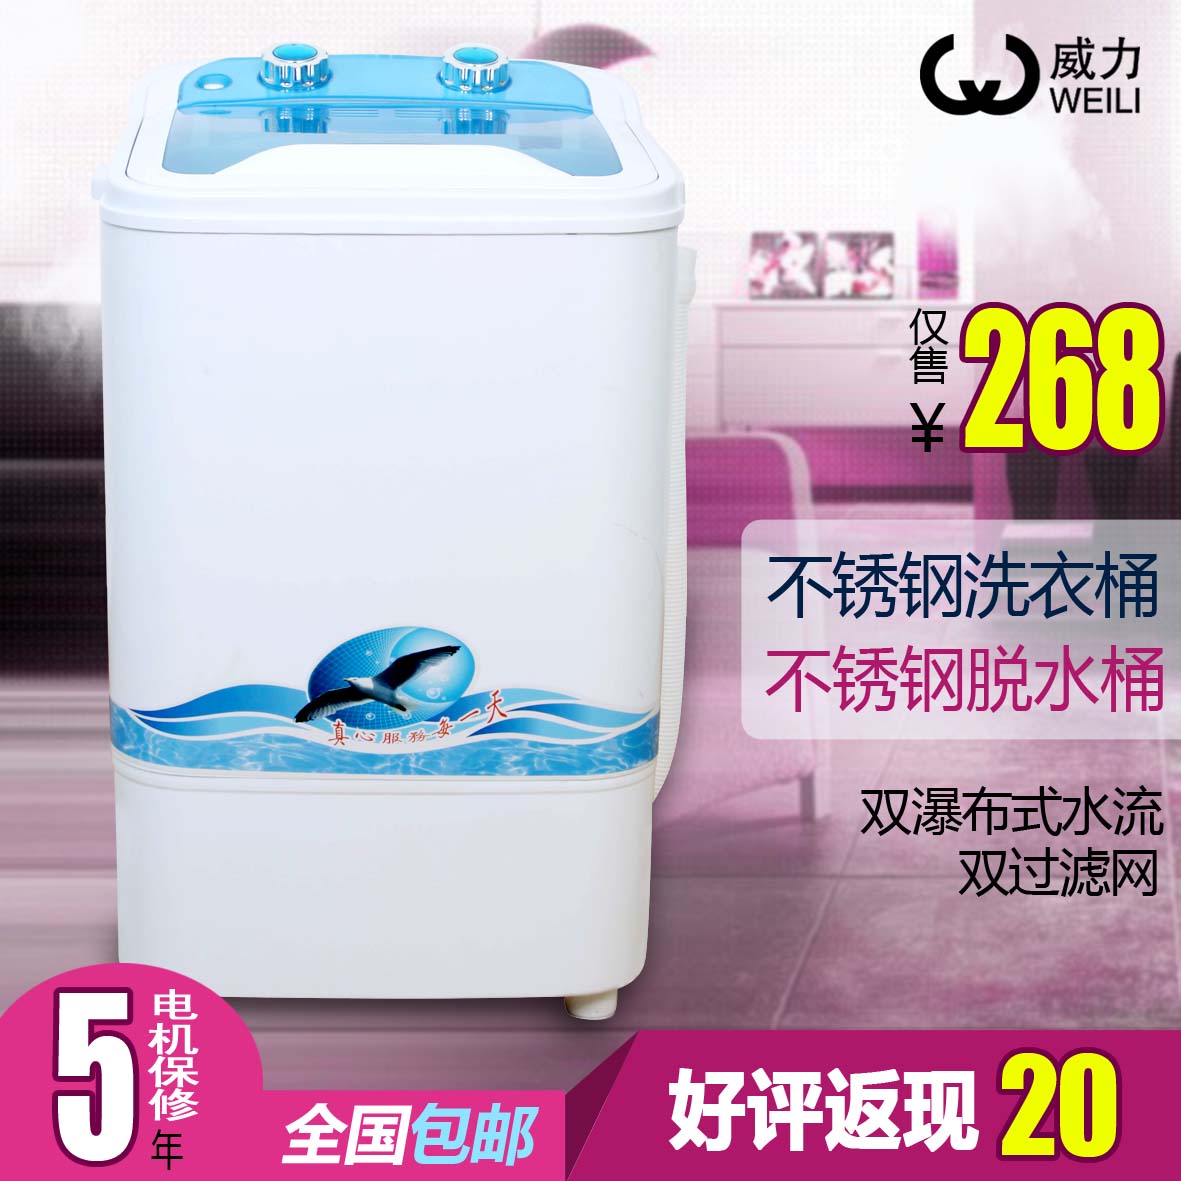 威力 XPB45-298 单筒小型迷你洗衣机 不锈钢洗衣桶 带甩干/脱水